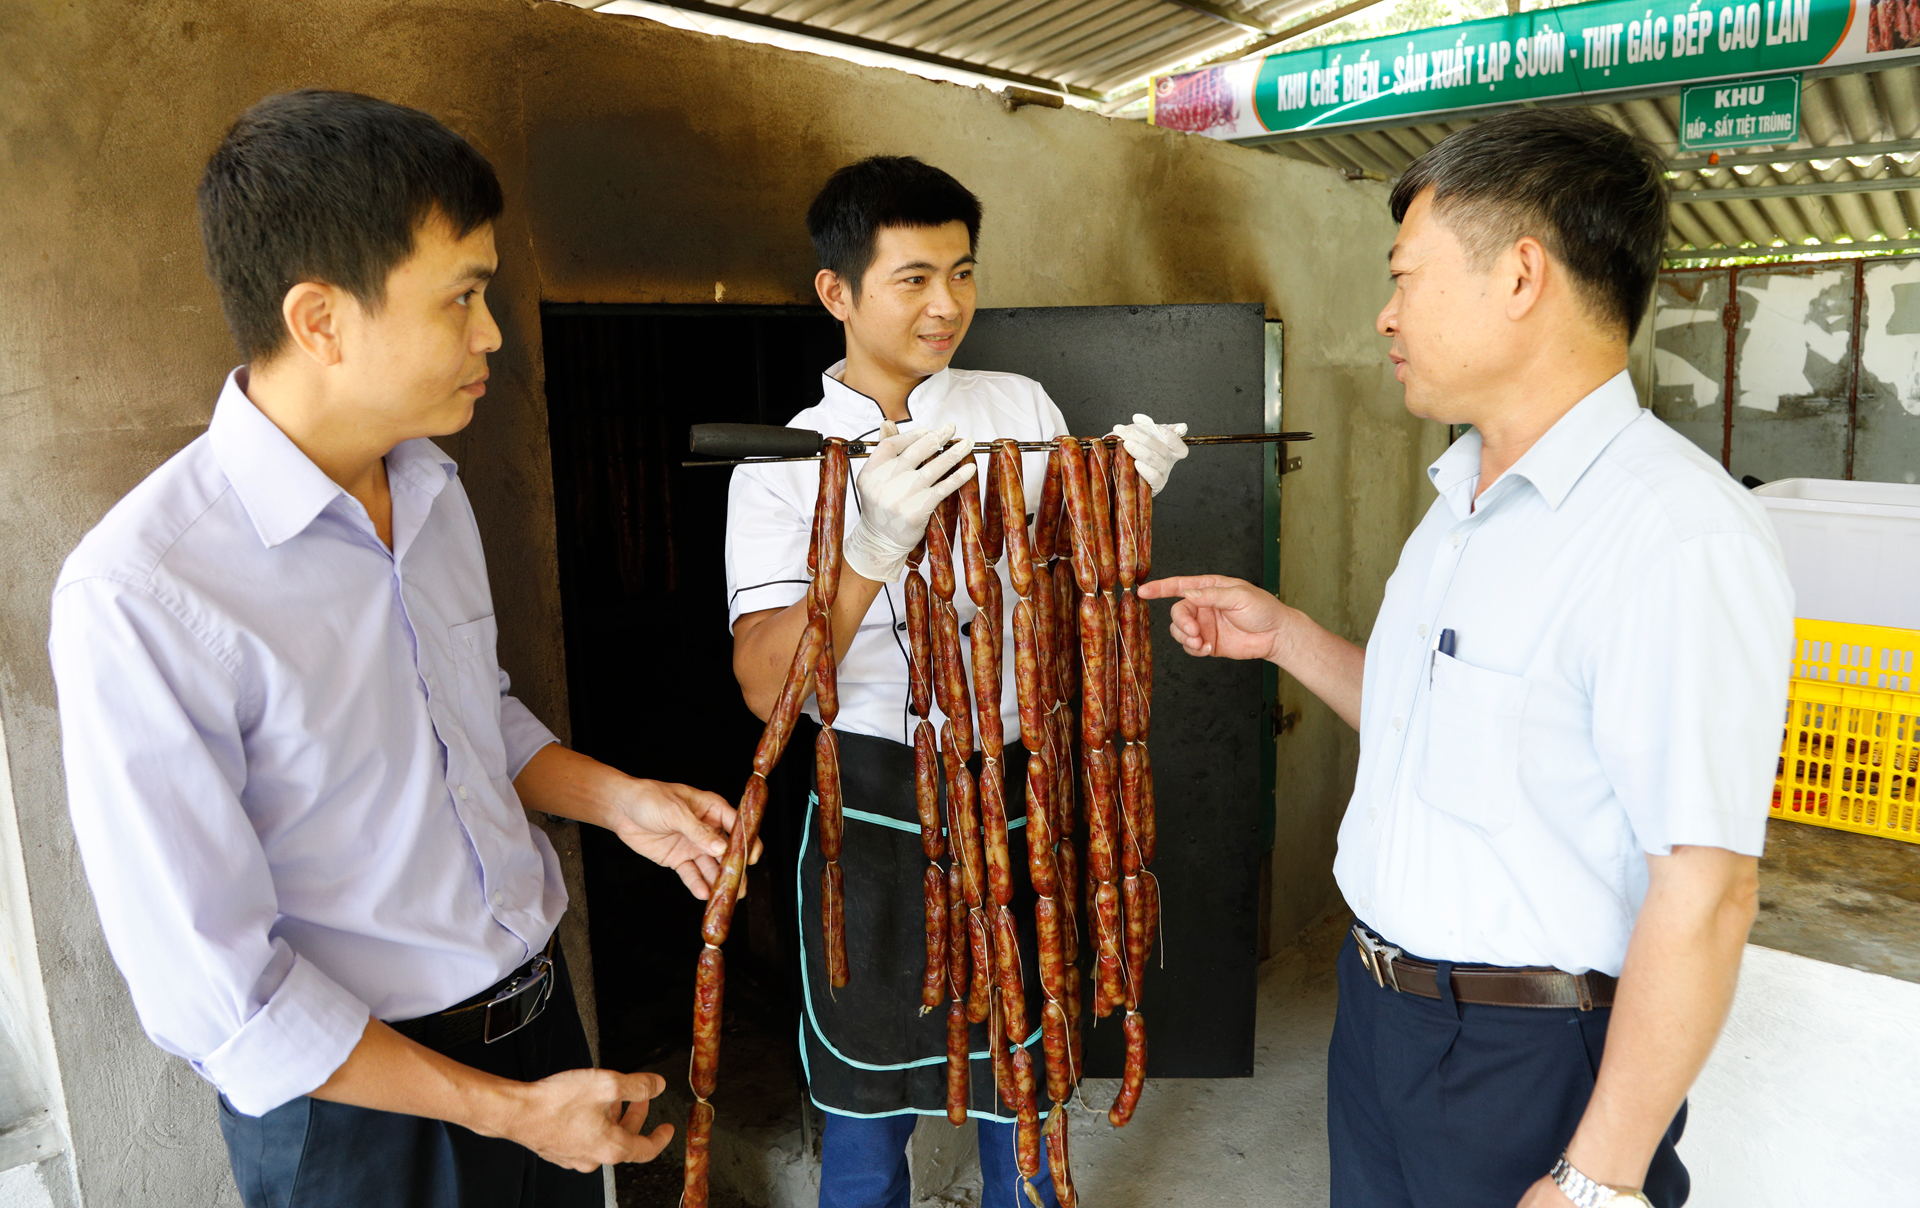 Hoàng Văn Mau giới thiệu sản phẩm lạp sườn mới ra lò.